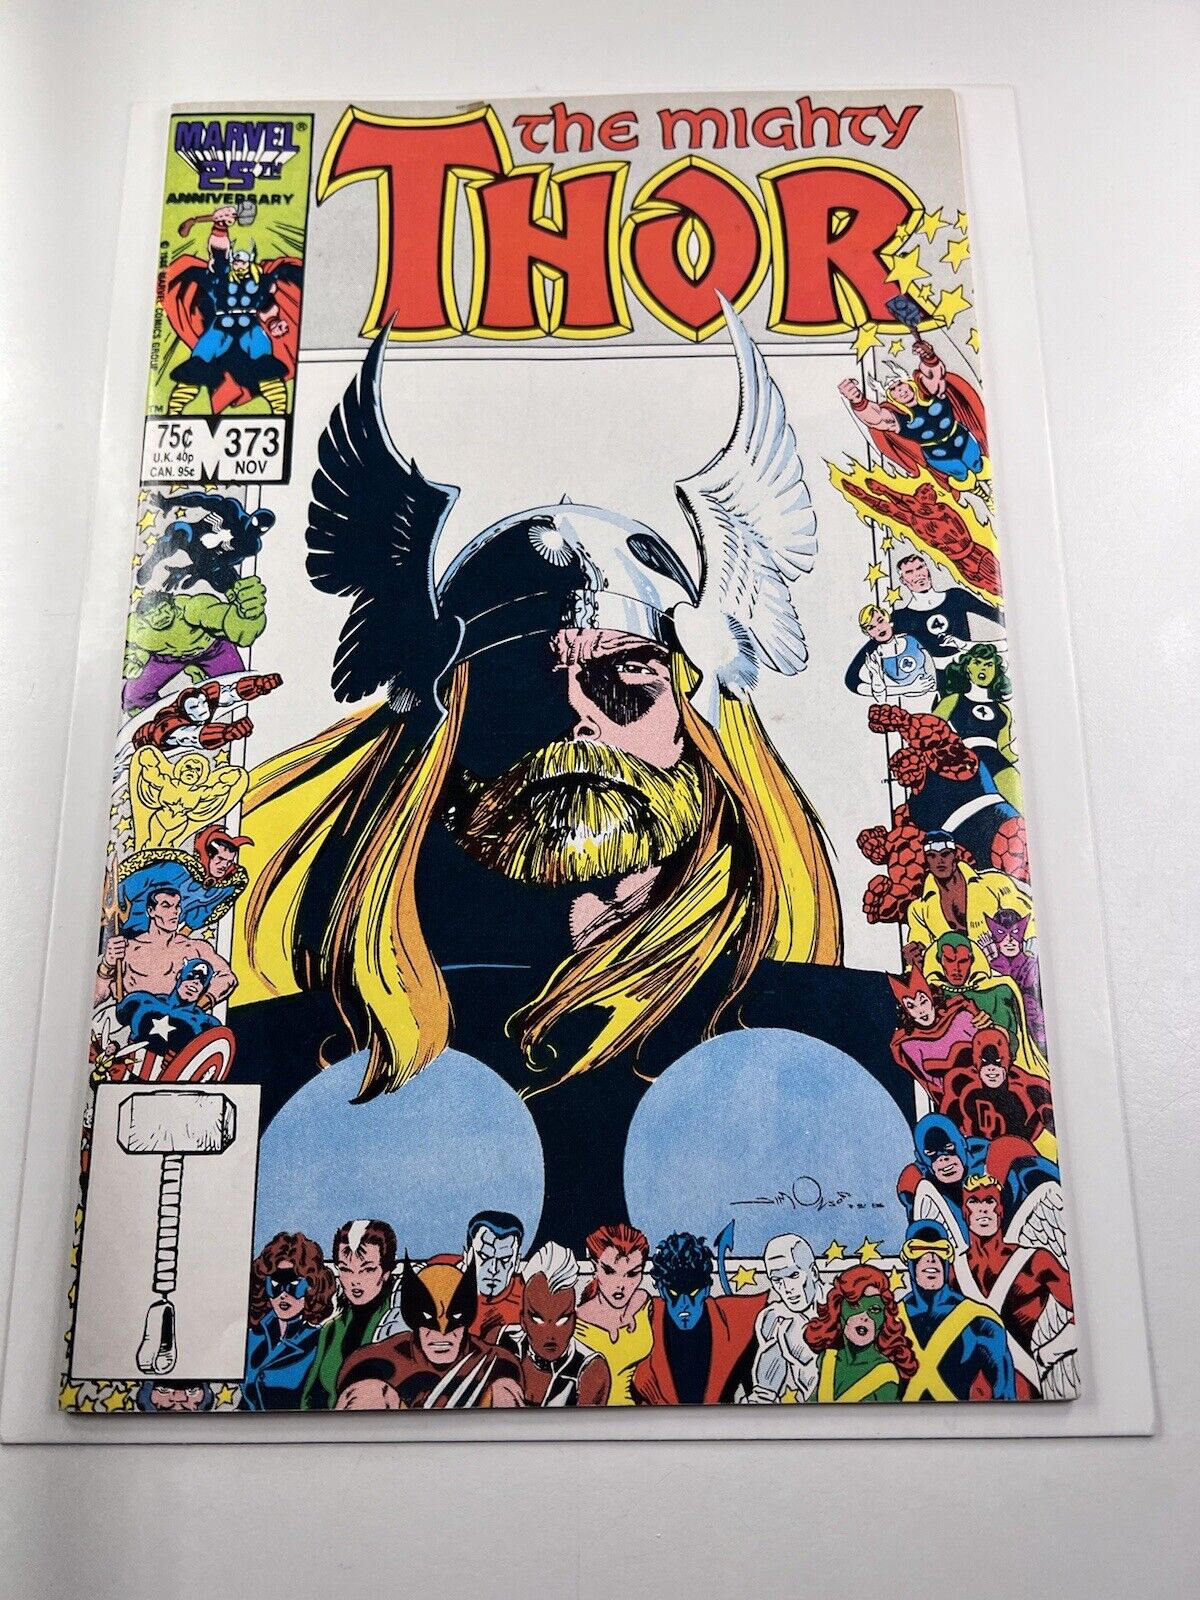 The Mighty Thor #373 (Marvel, November 1986)